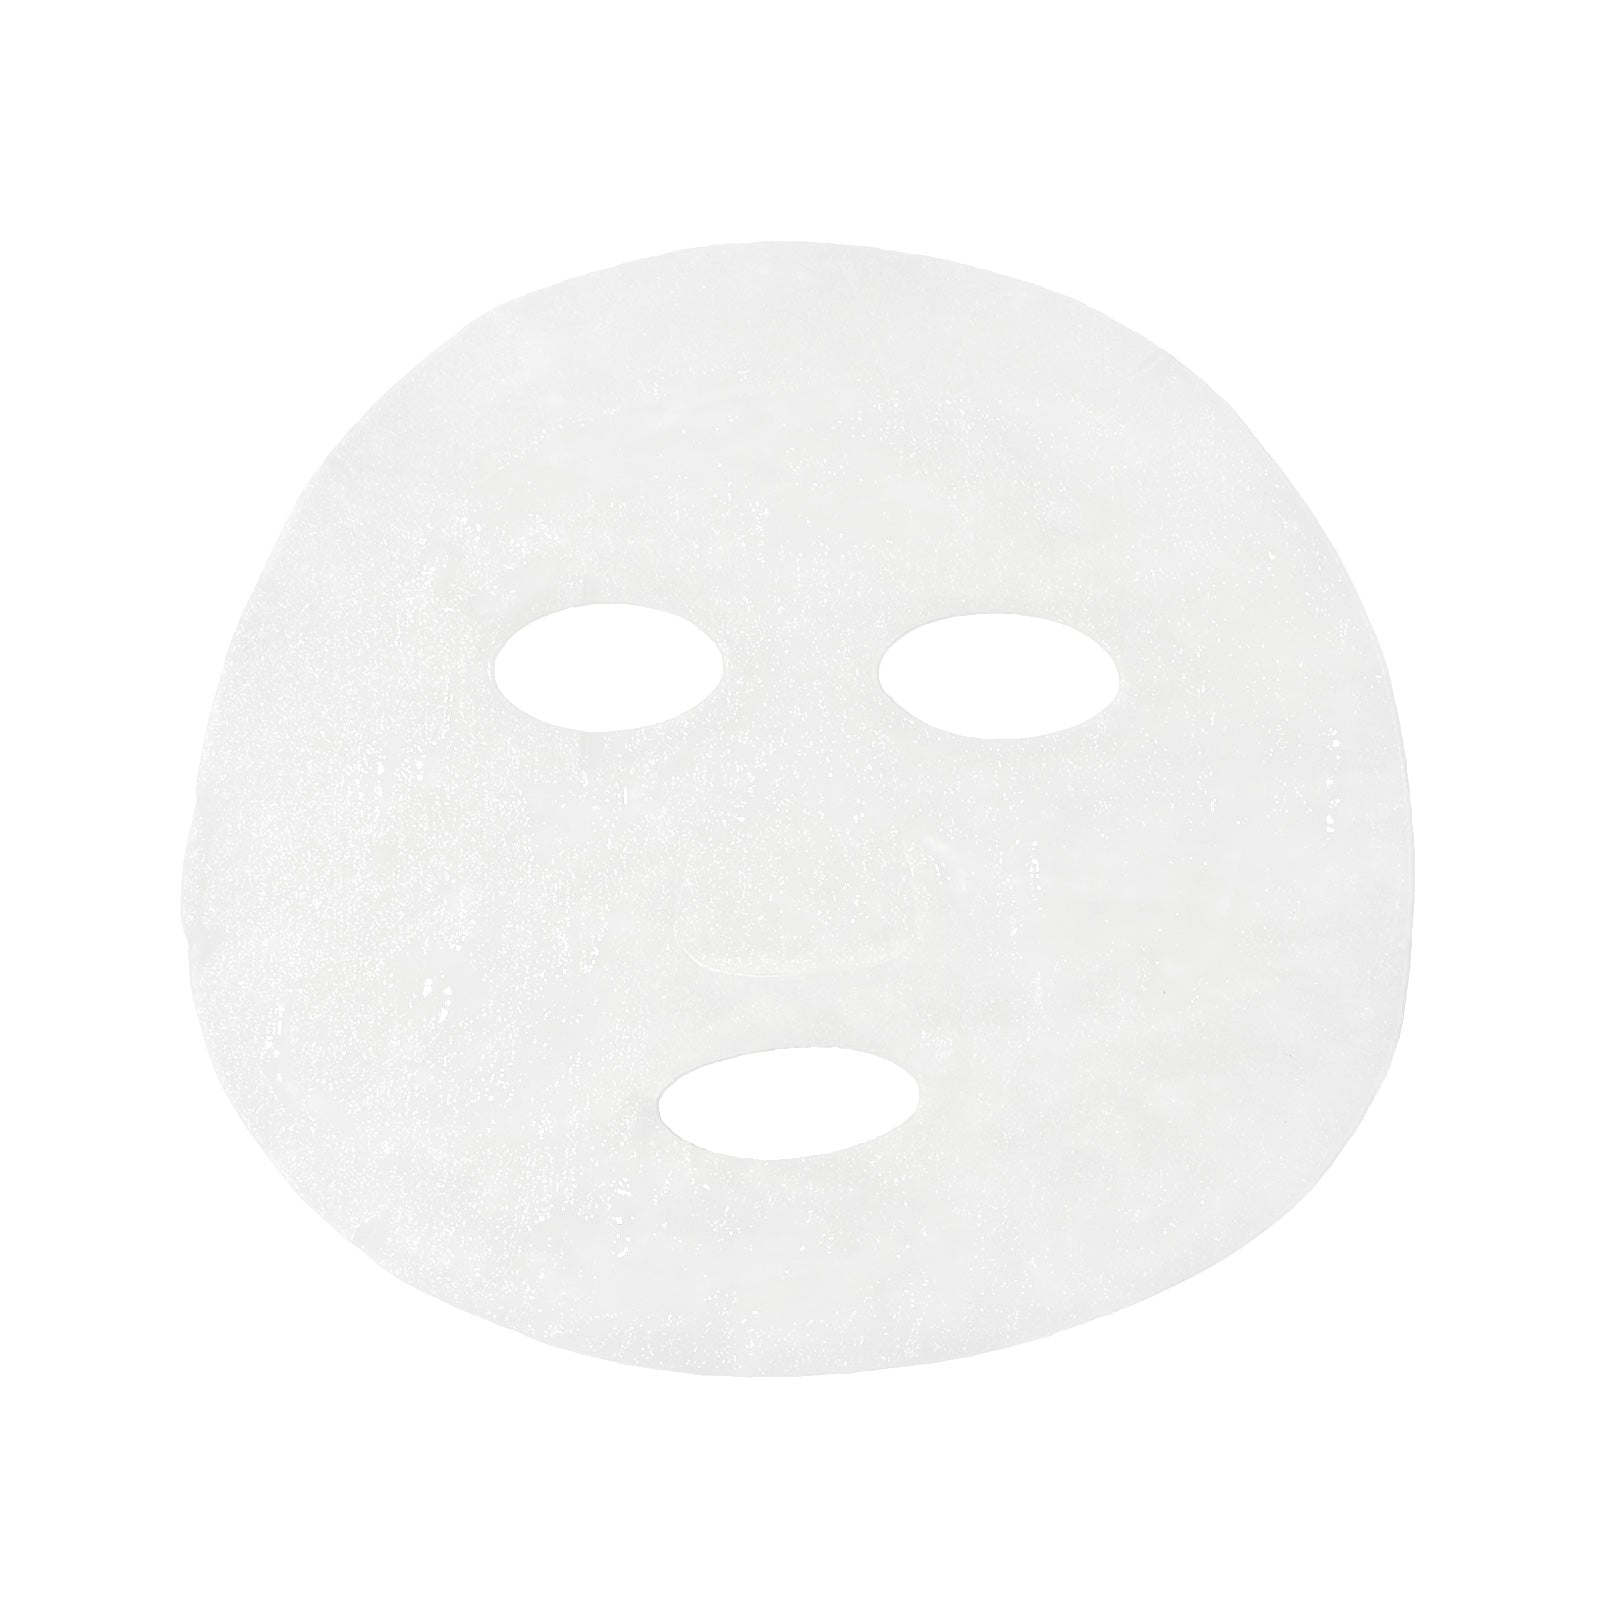 Maskology Hyaluronic Acid Professional Face Sheet Mask 22ml